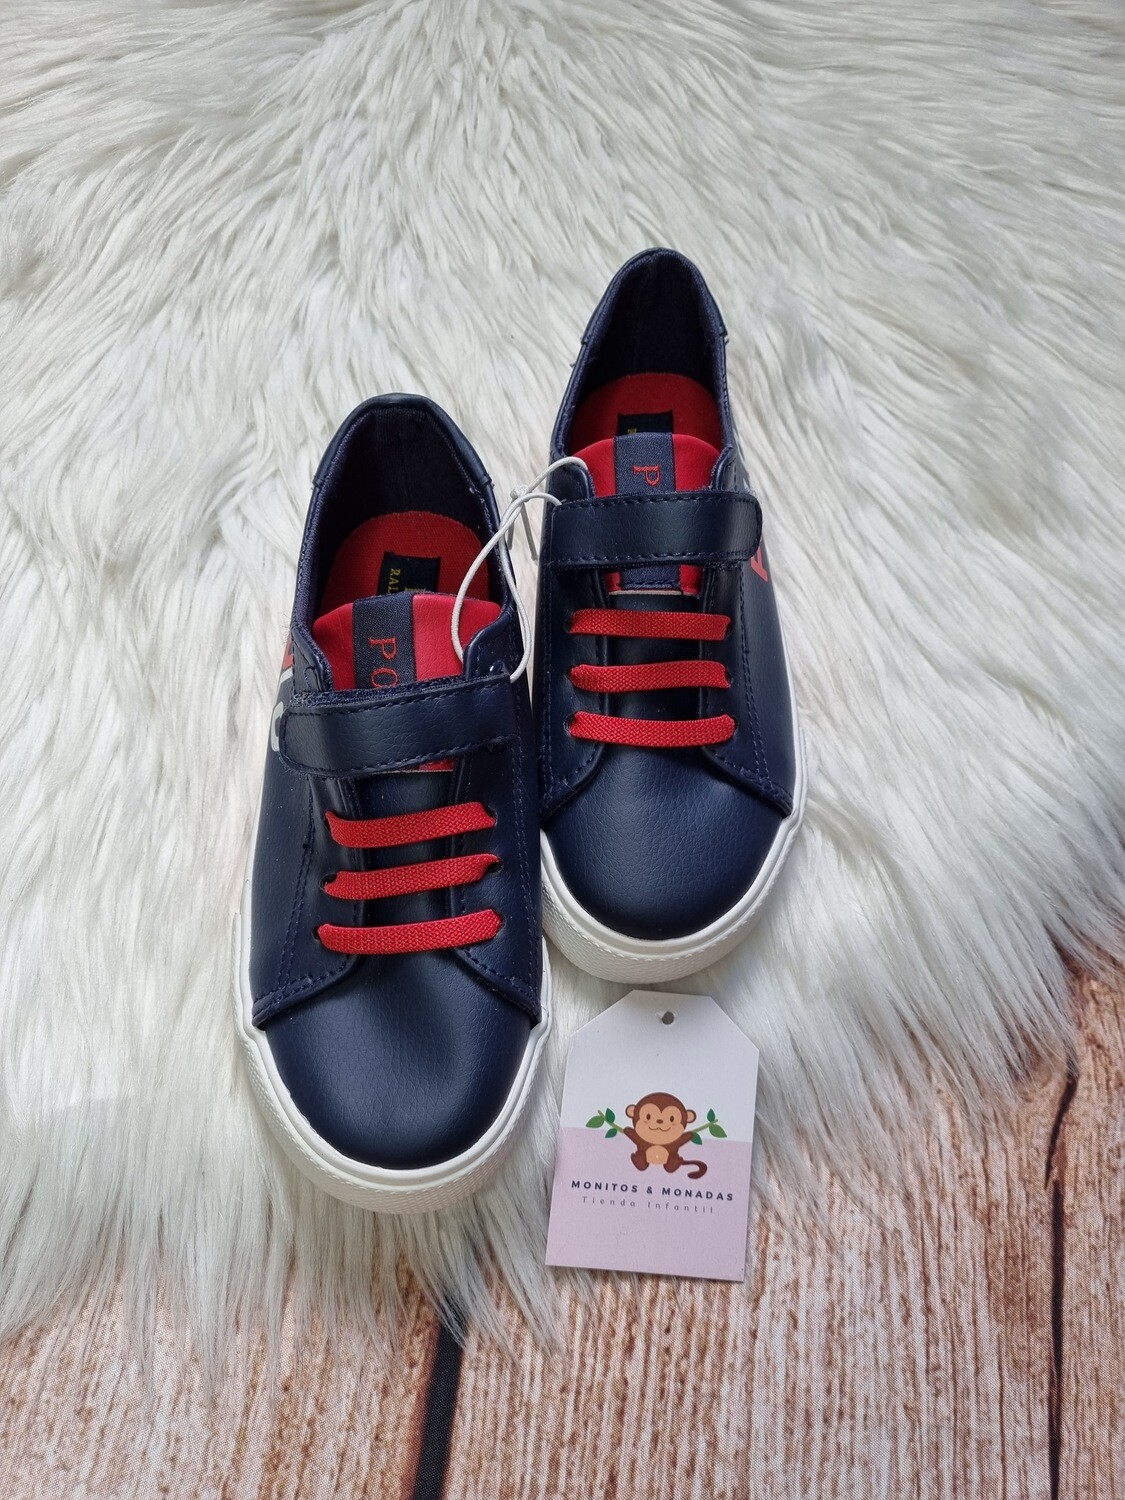 Zapatos color azul y rojo, deportivo - casual, Polo Ralph Lauren, talla 10us